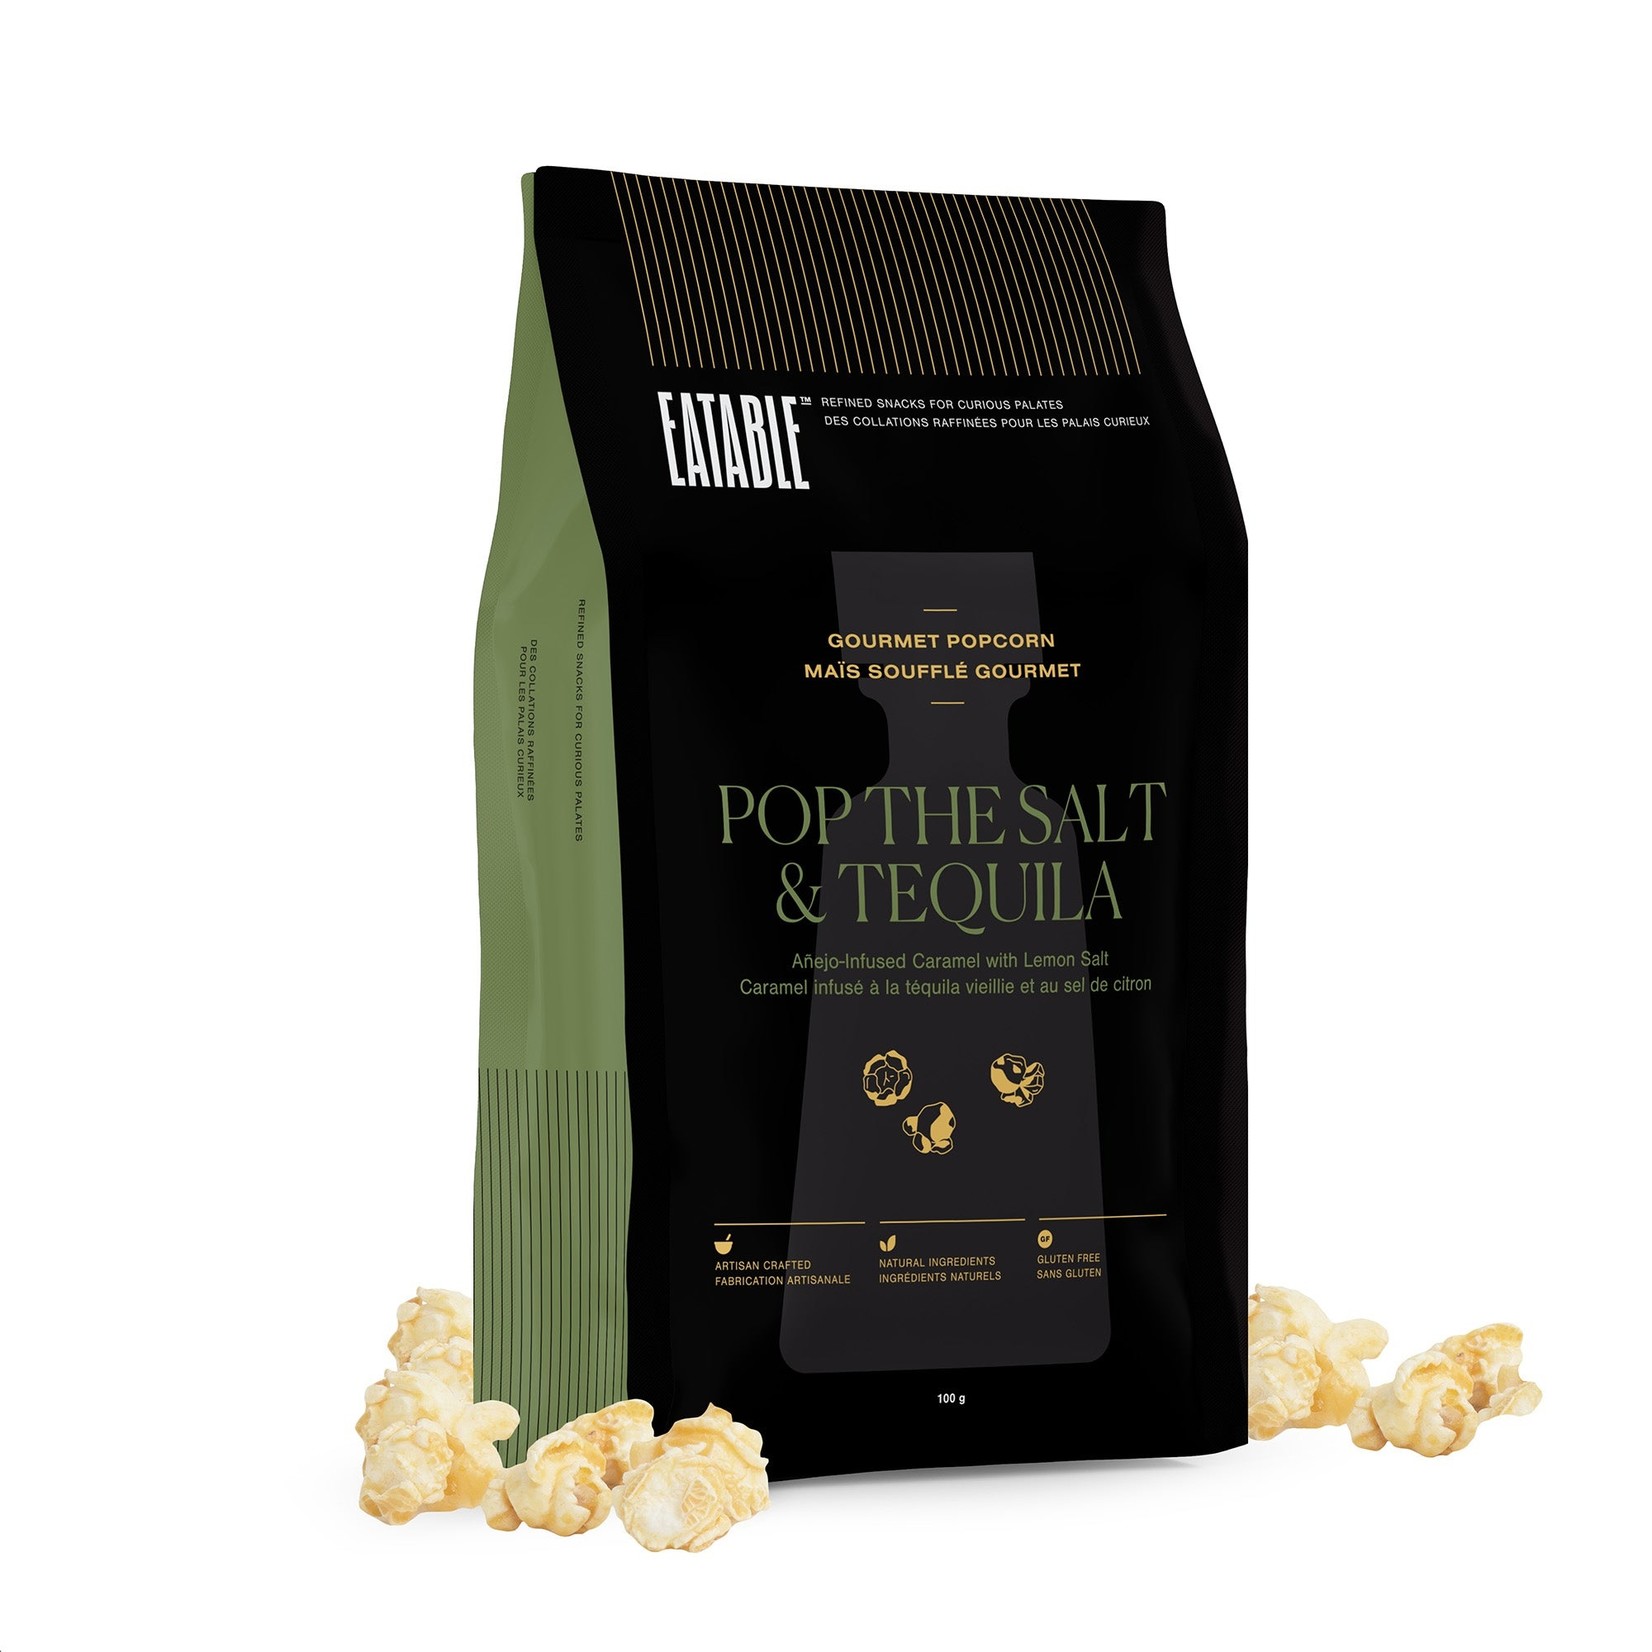 Eatable Popcorn Pop the Salt & Tequilla